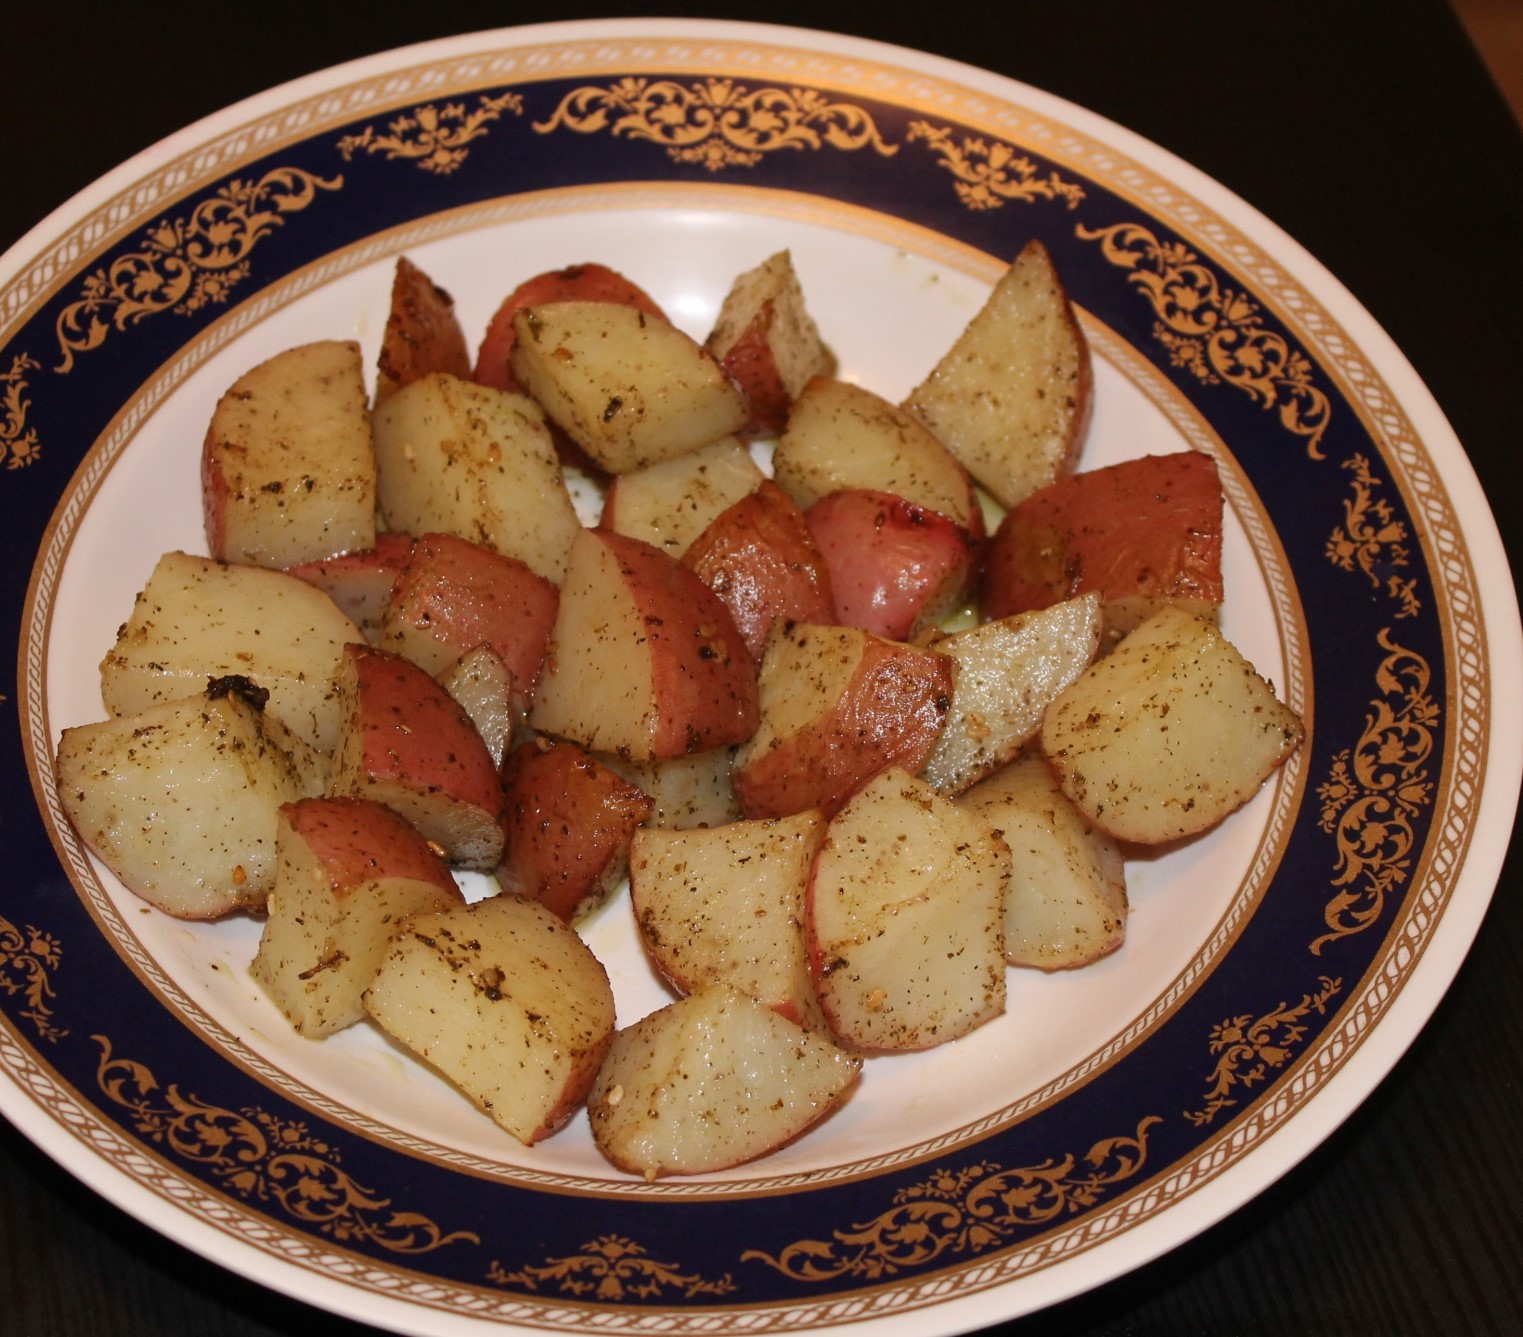 Lemon & Oregano Roasted Potatoes